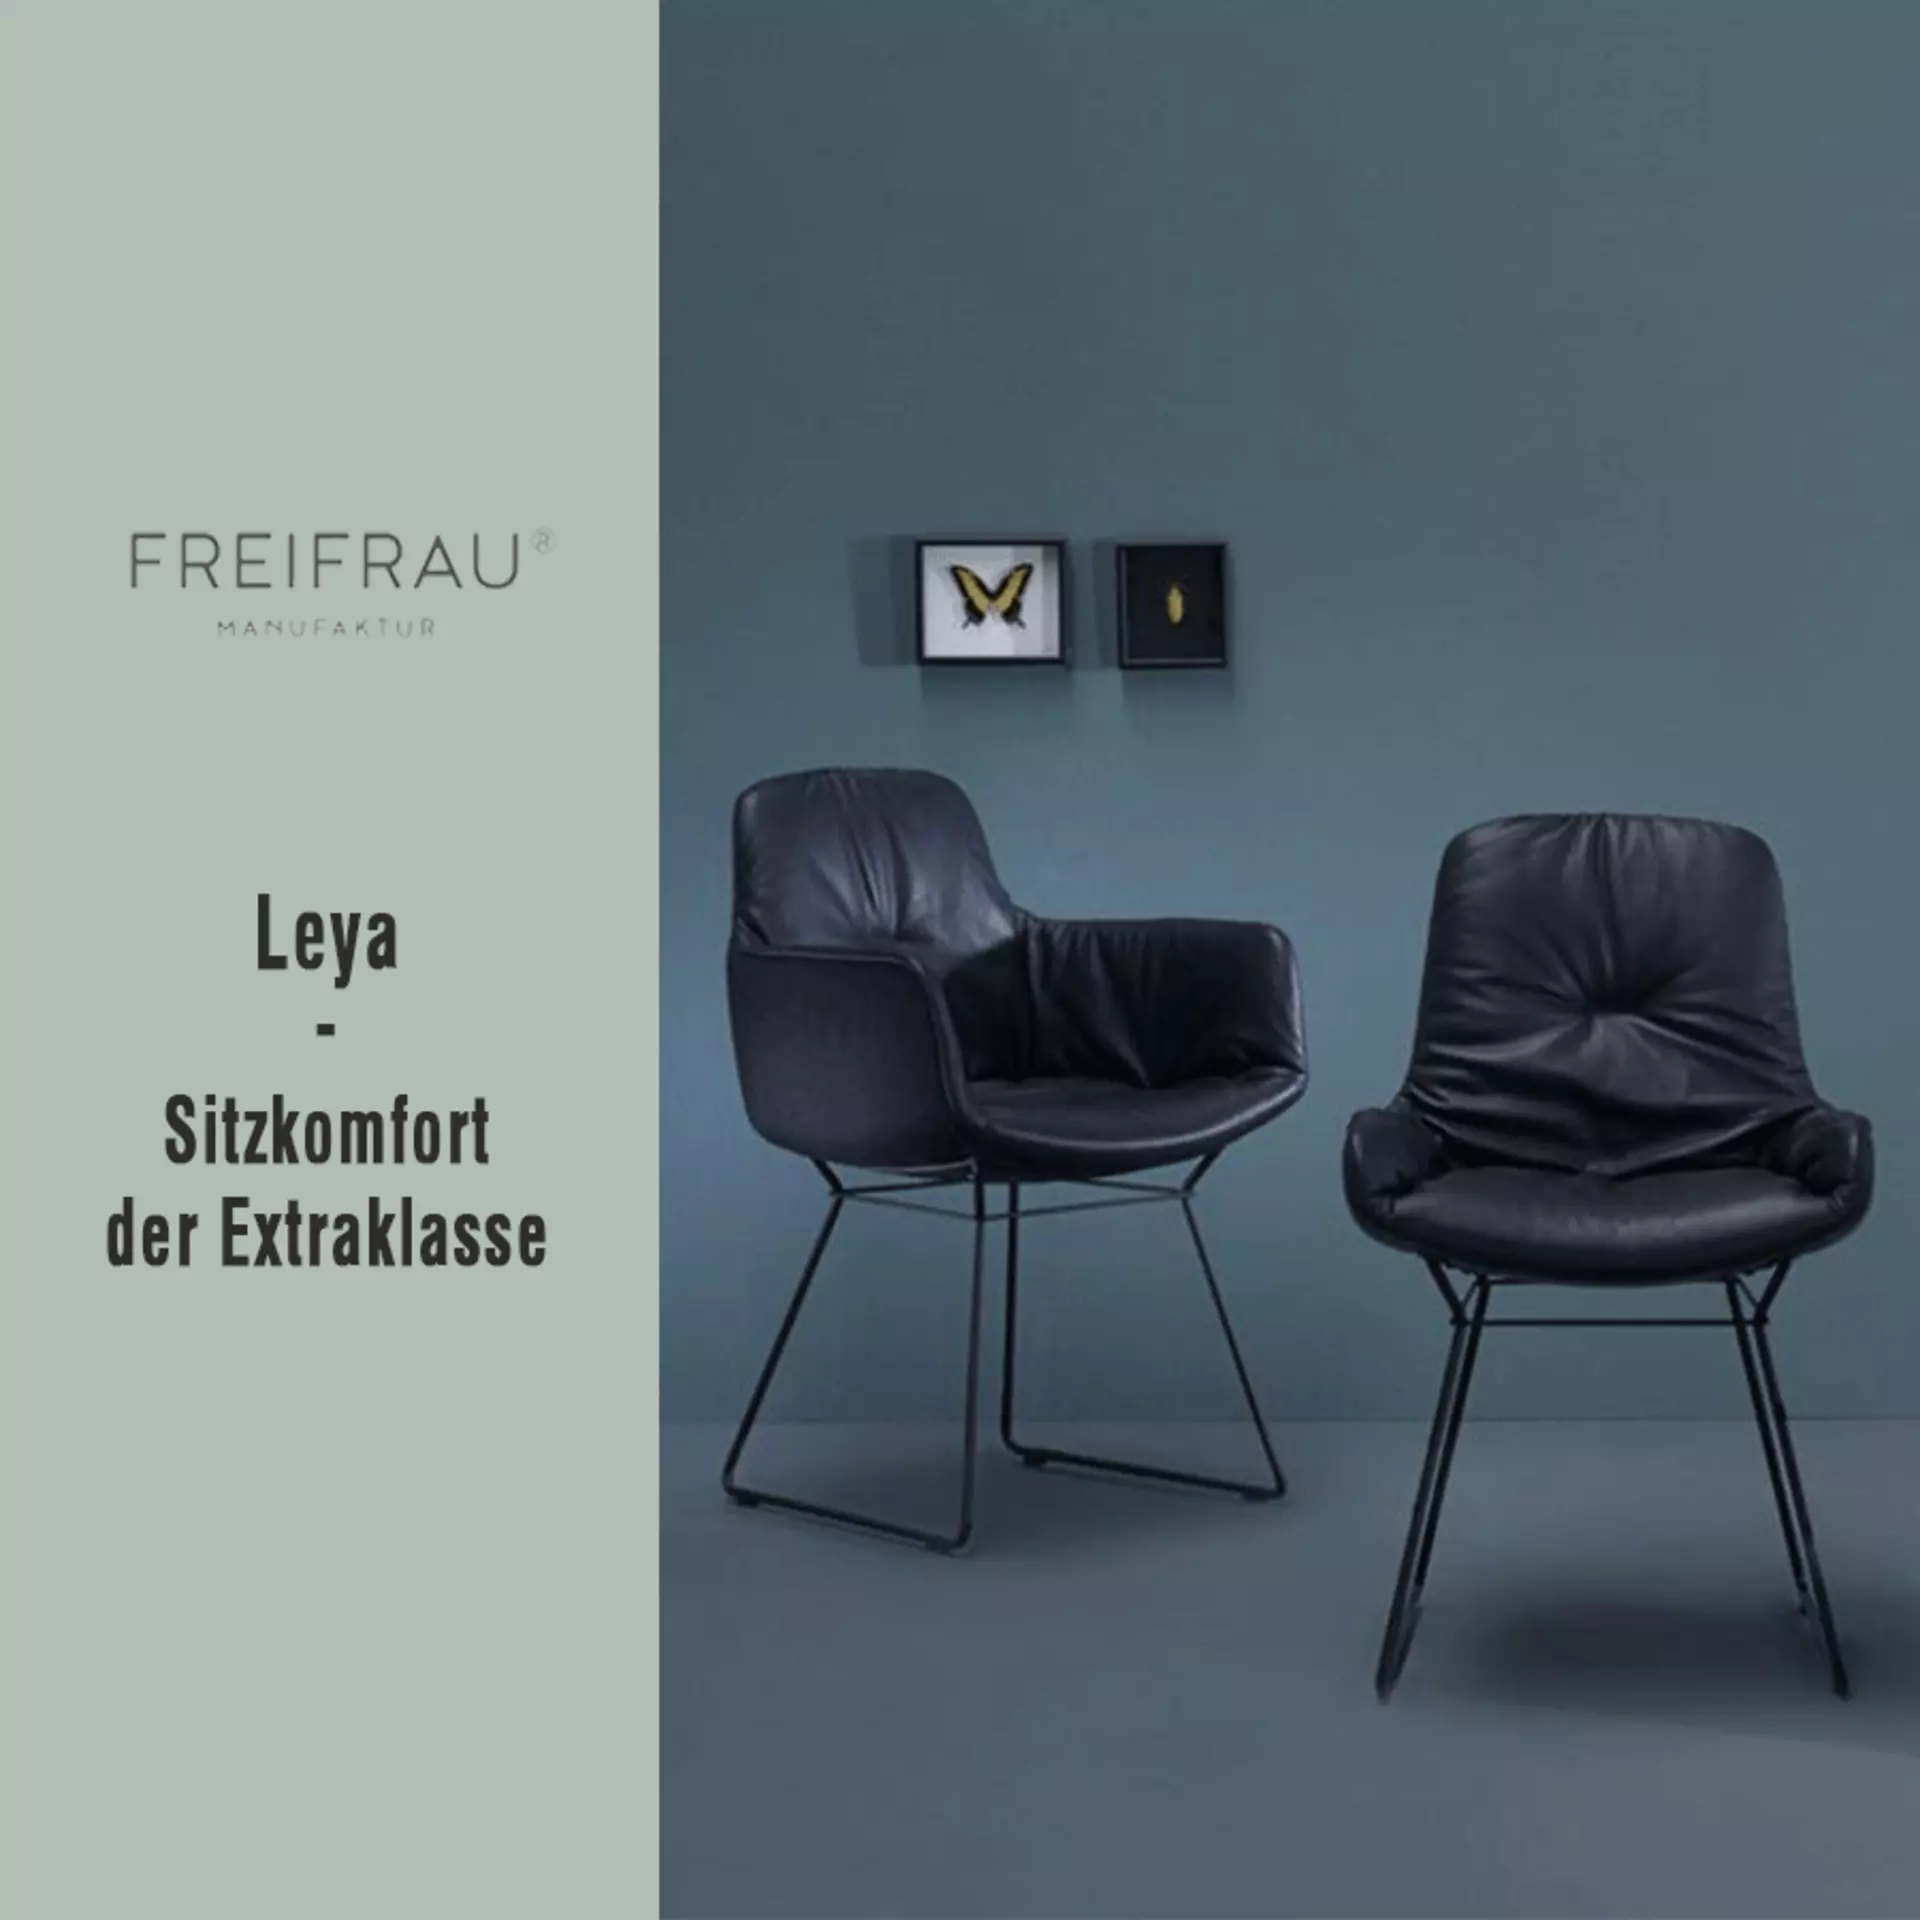 Zur Aktion bei interni by inhofer: Leya - Sitzmöbel der Extraklasse von Freifrau